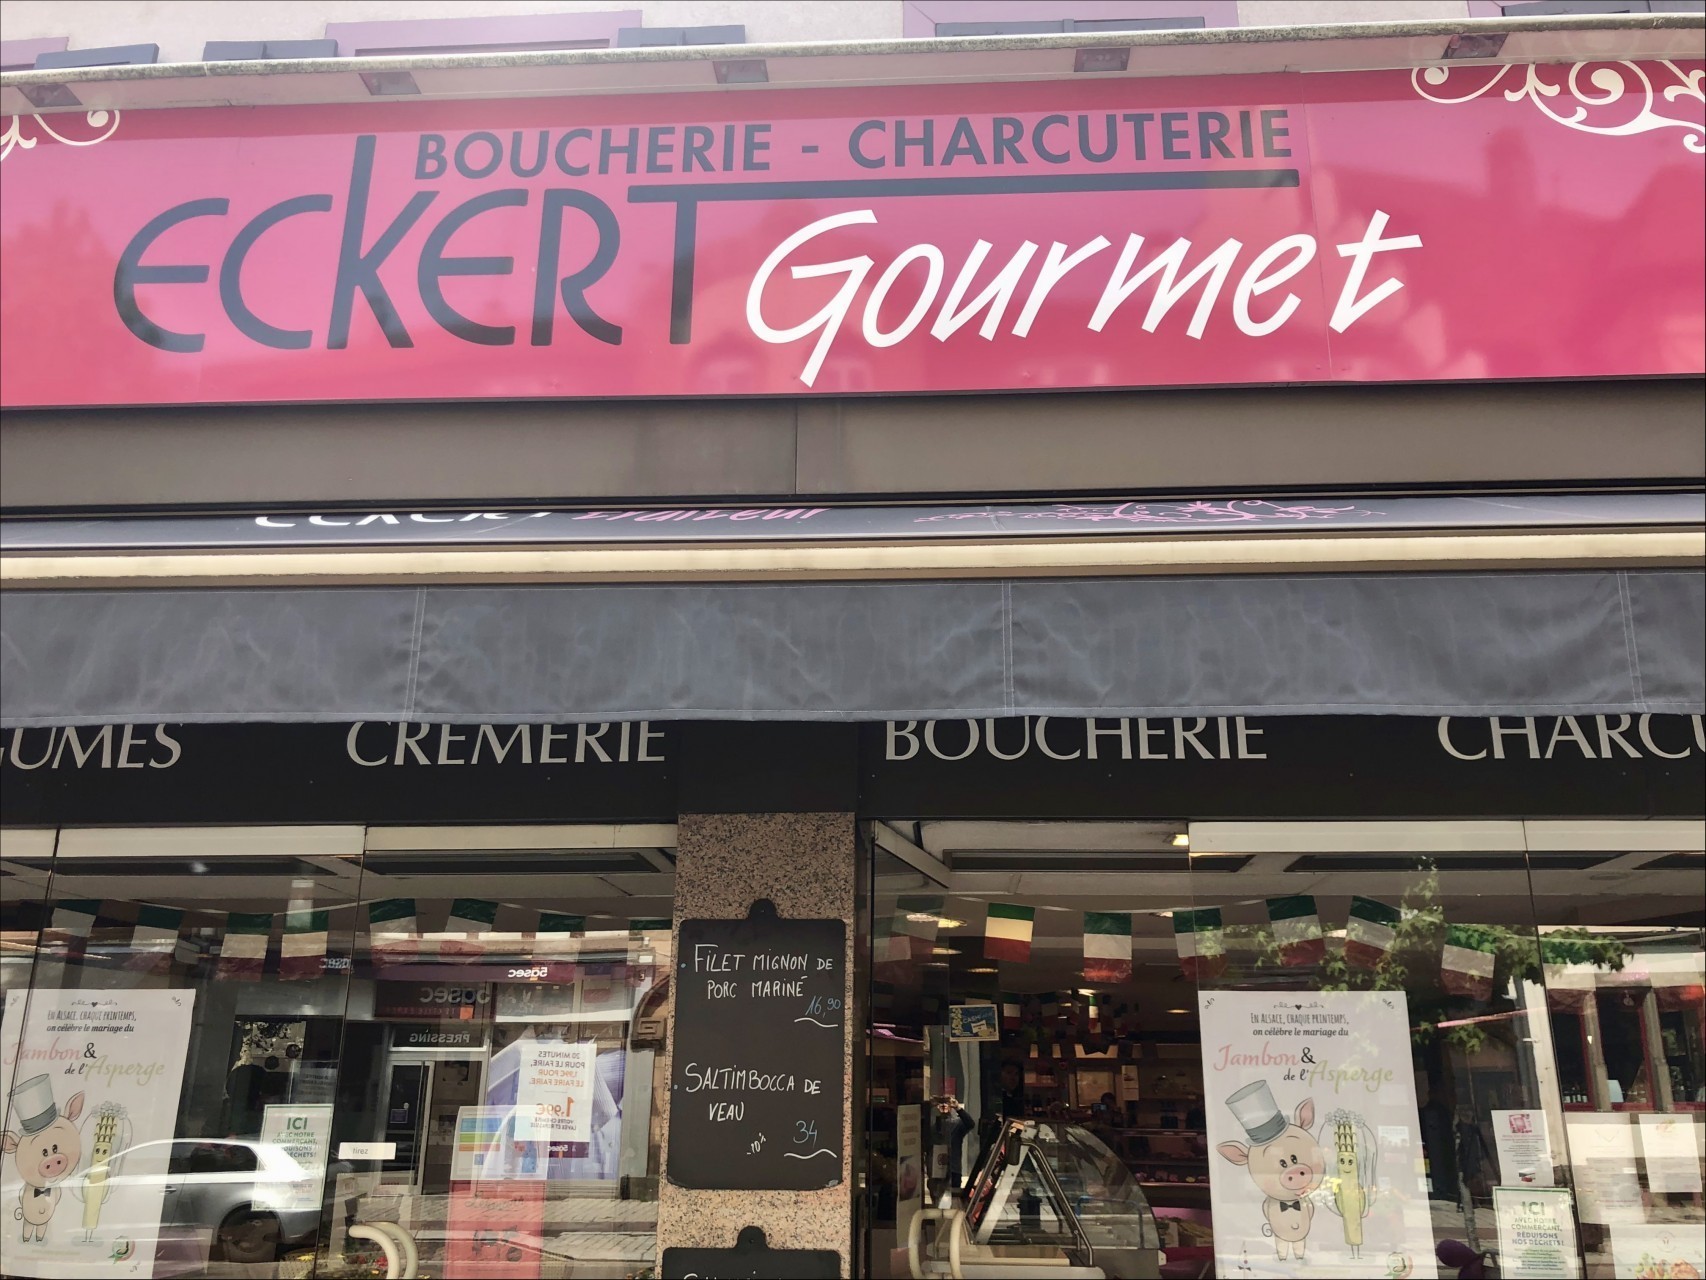 ECKERT GOURMET  - 1kg de steak Label R à 19,95€